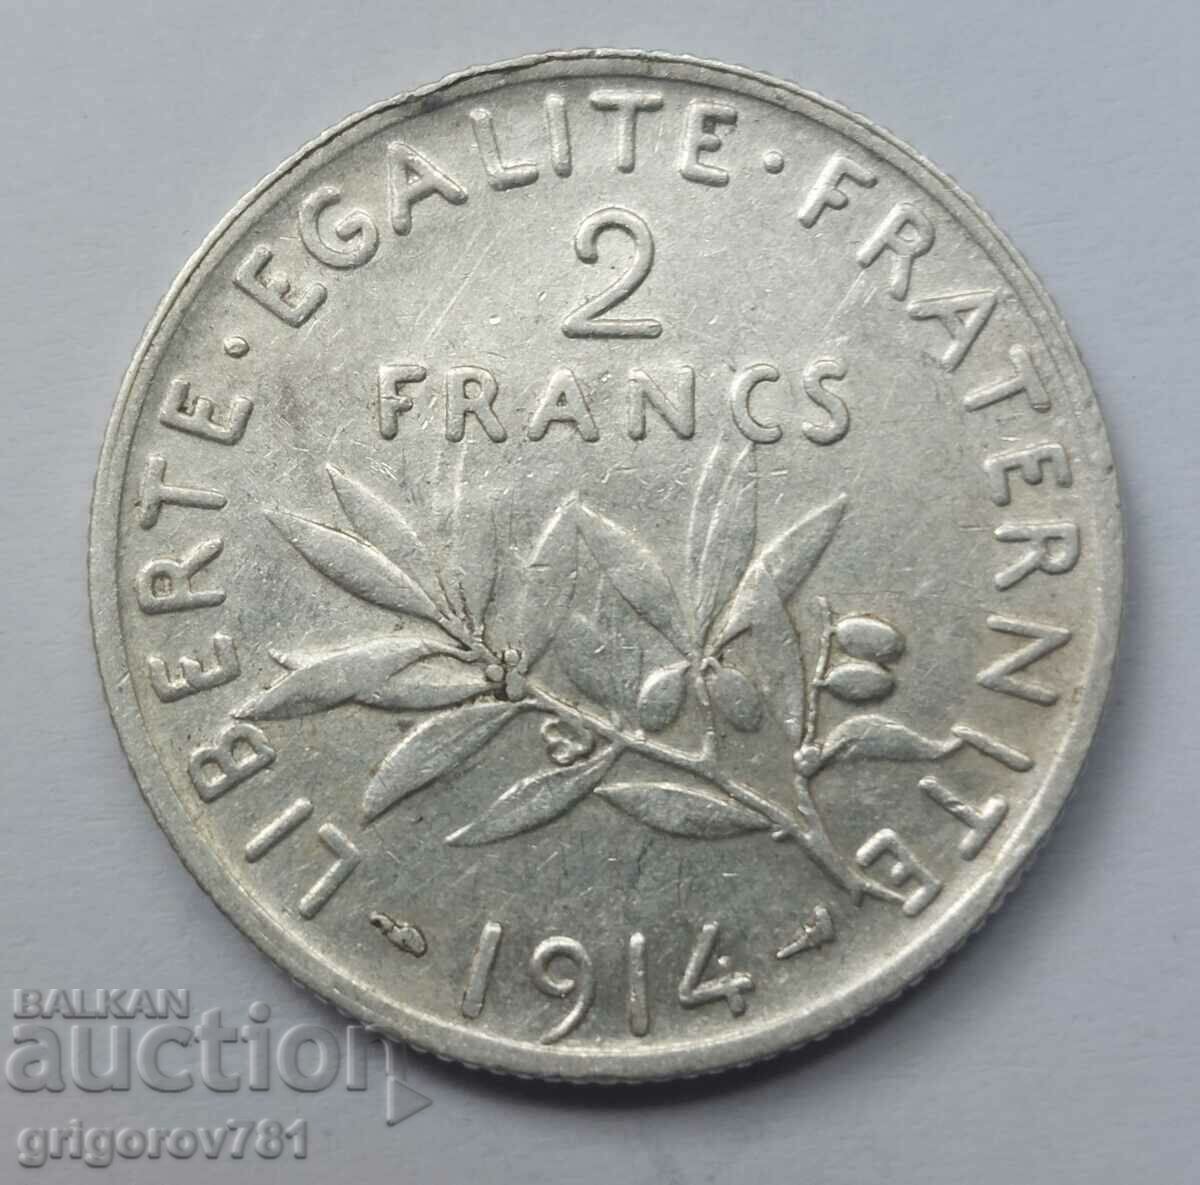 2 Franci Argint Franta 1914 - Moneda de argint #67